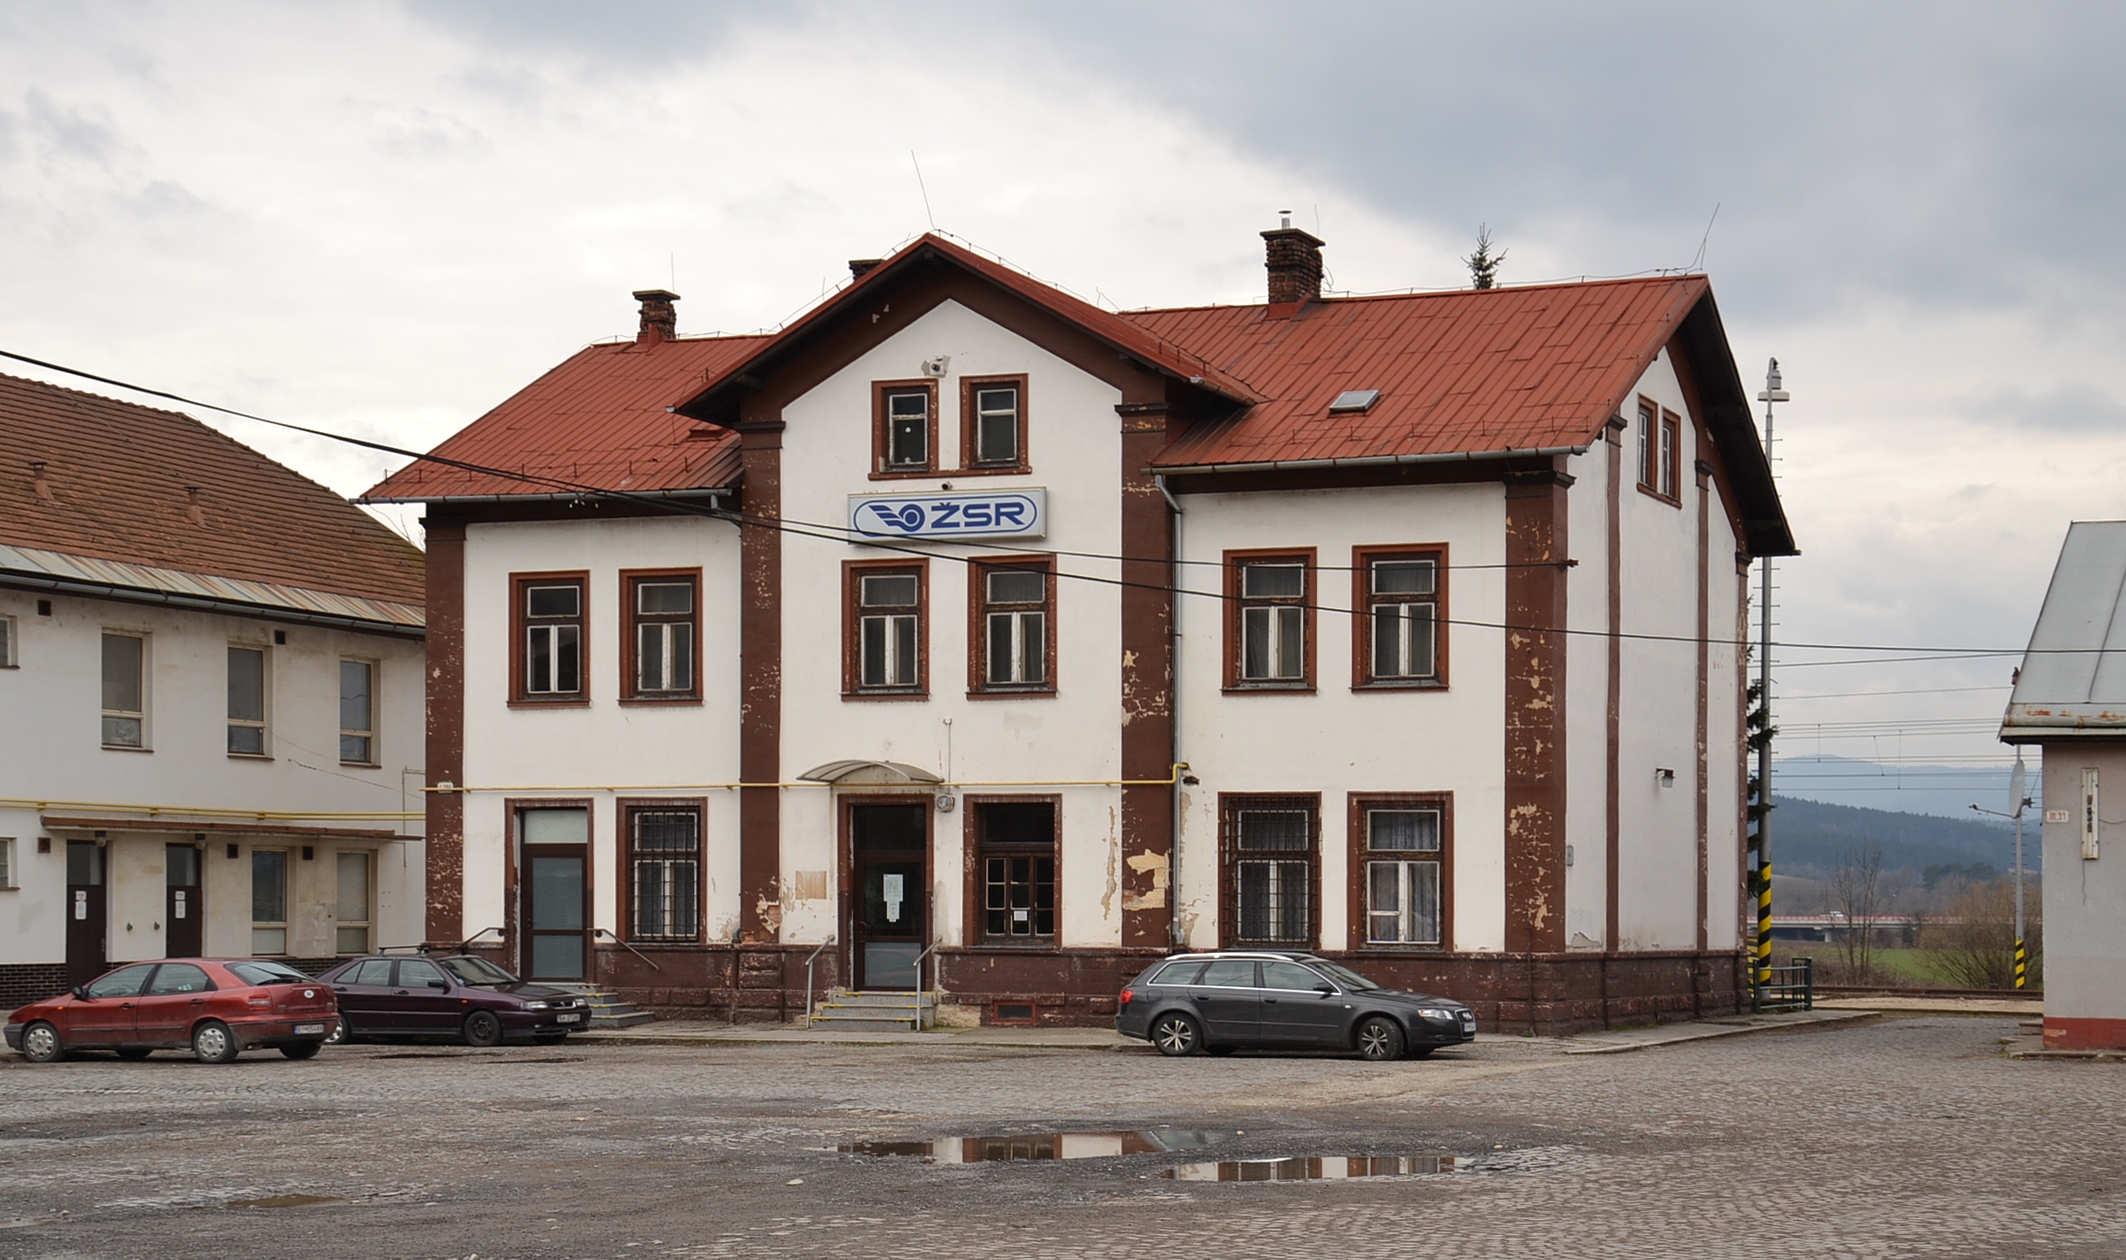 Bytča (Großbitsch, Nagybicscse) - railway station